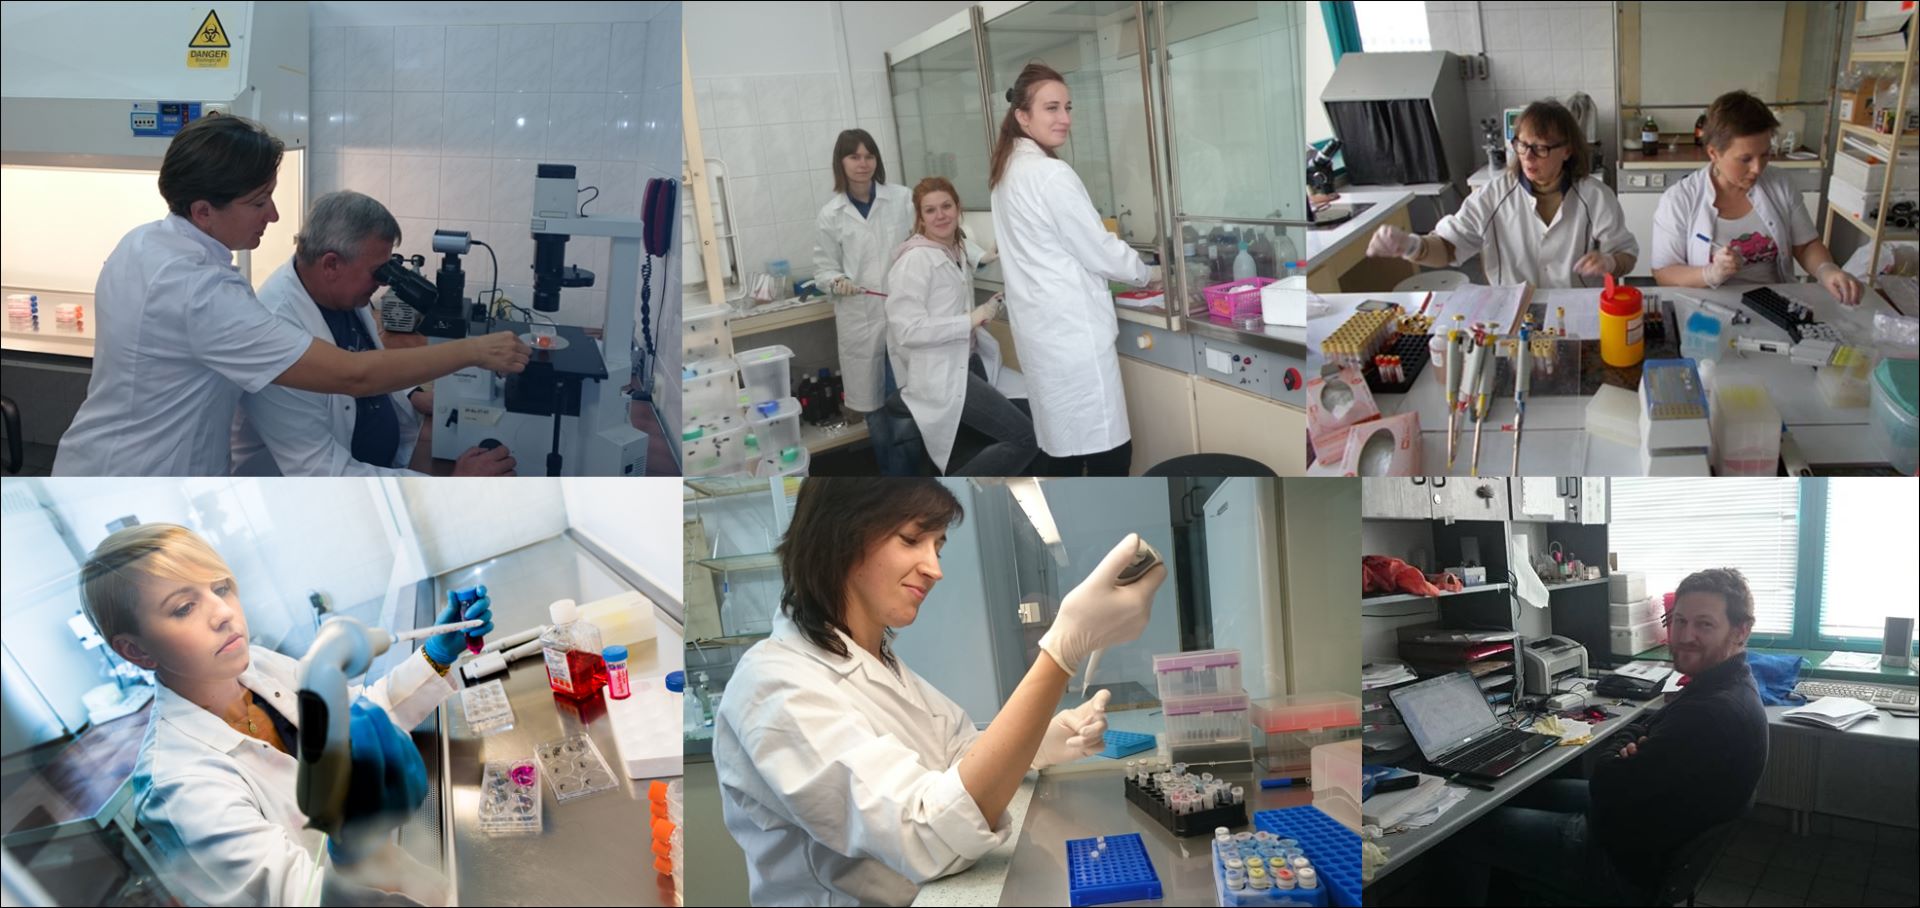 Kolaż 6 zdjęć przedstawiających naukowców w laboratoriach przy pracy